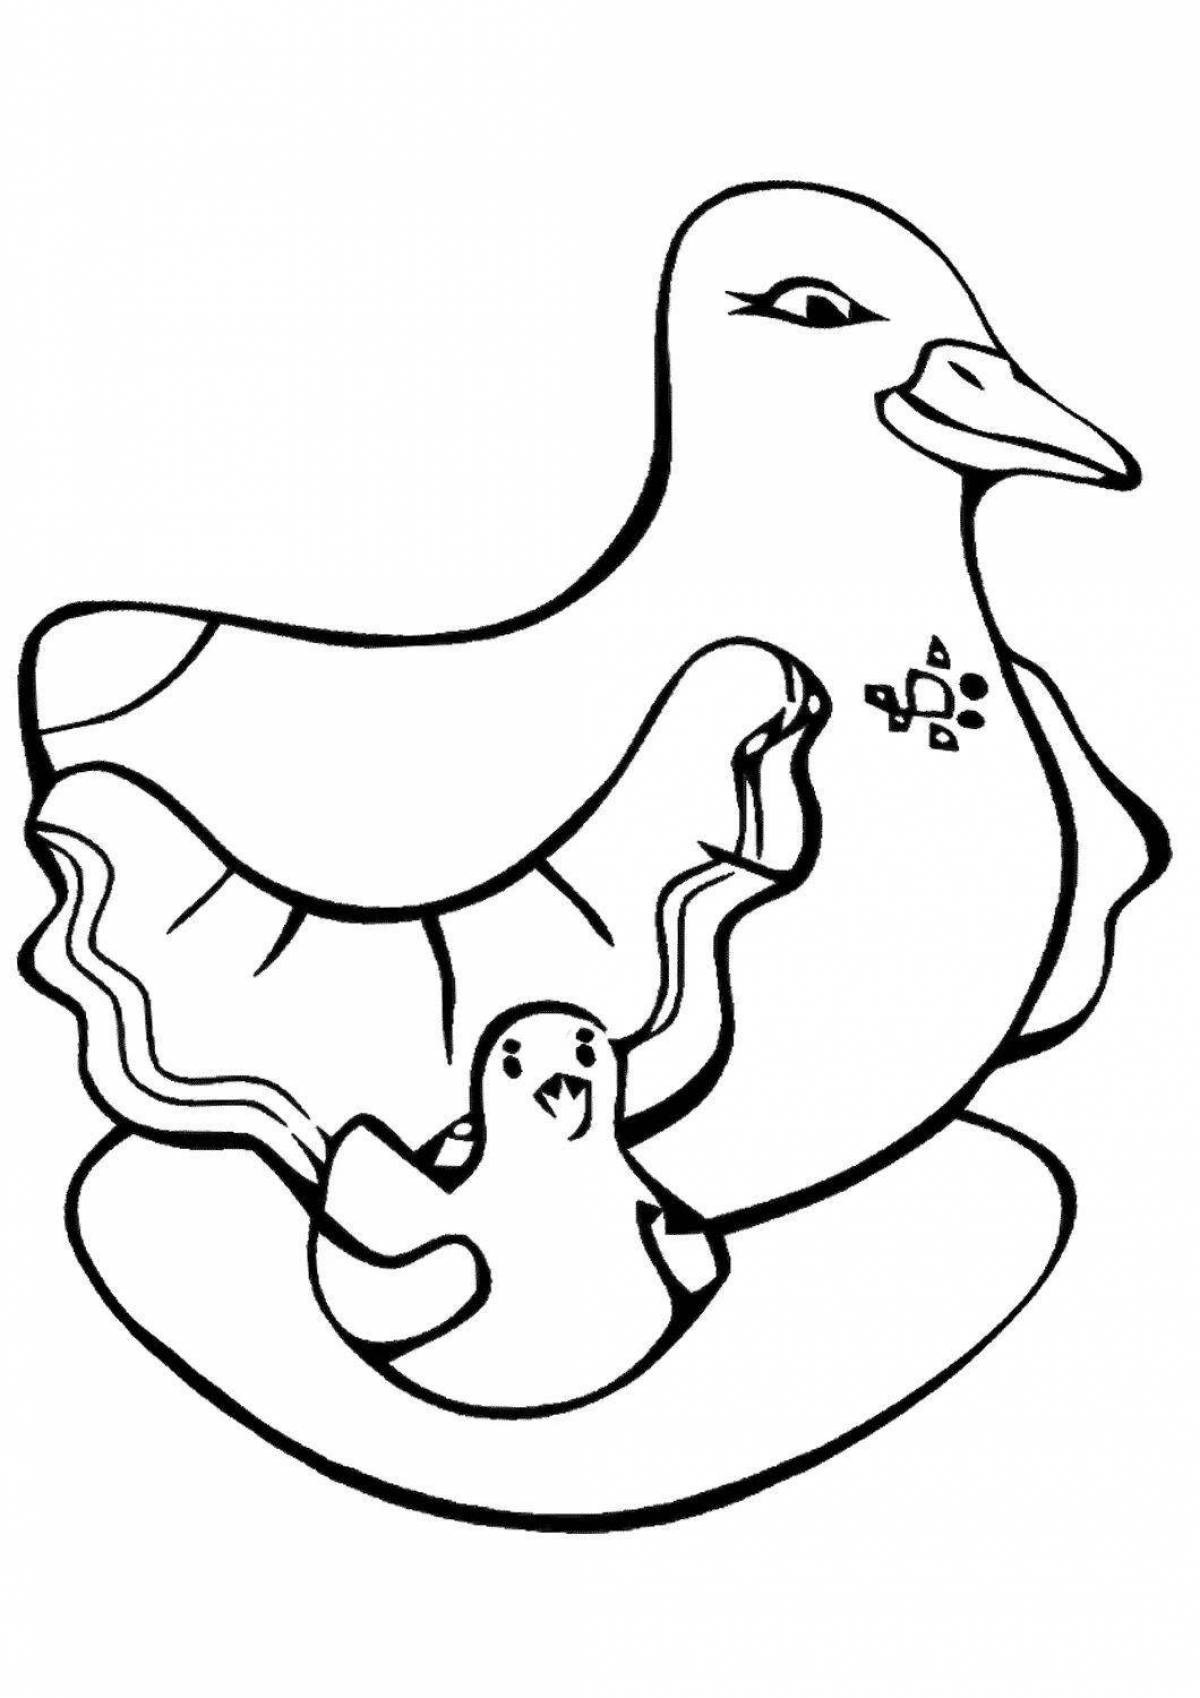 Раскраска очаровательная дымковская утка для детей младшего возраста